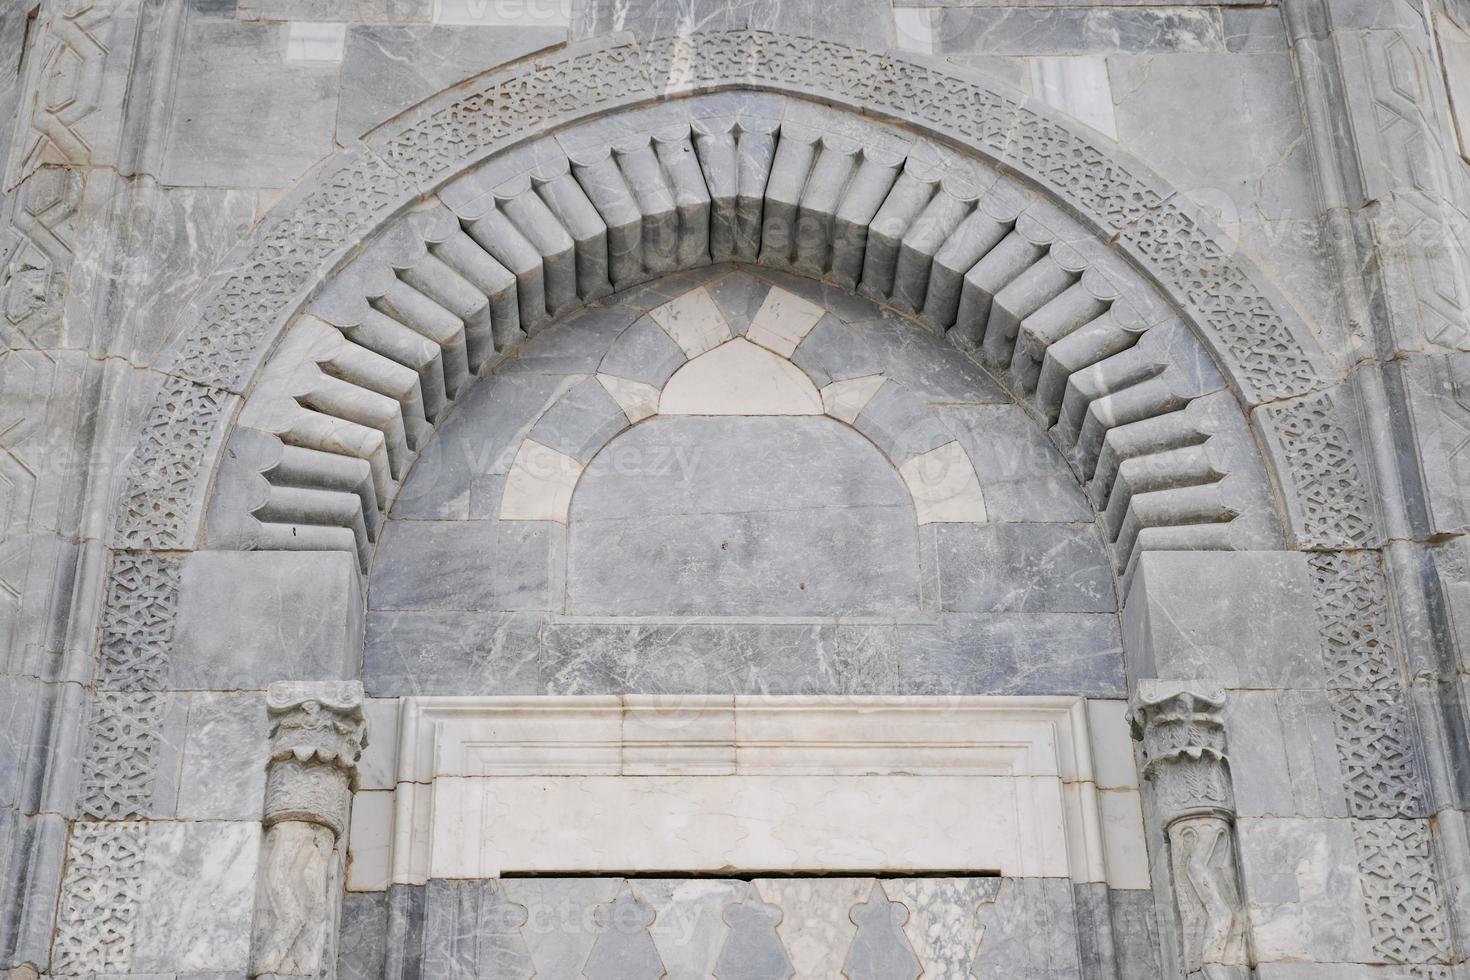 alaaddin moskee in konja, turkiye foto